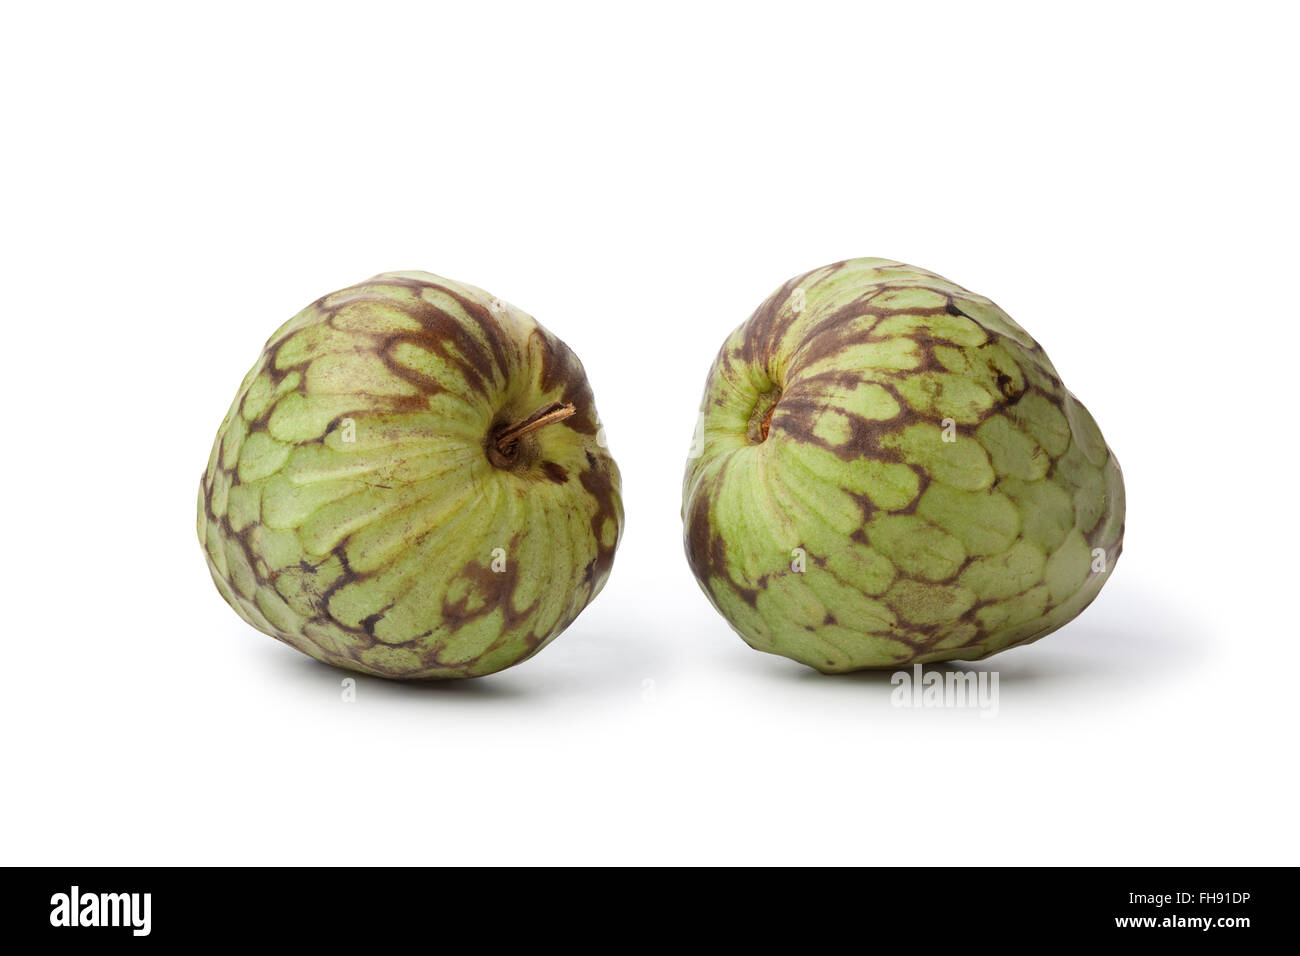 Pair of whole fresh Cherimoya fruit isolated on white background Stock Photo